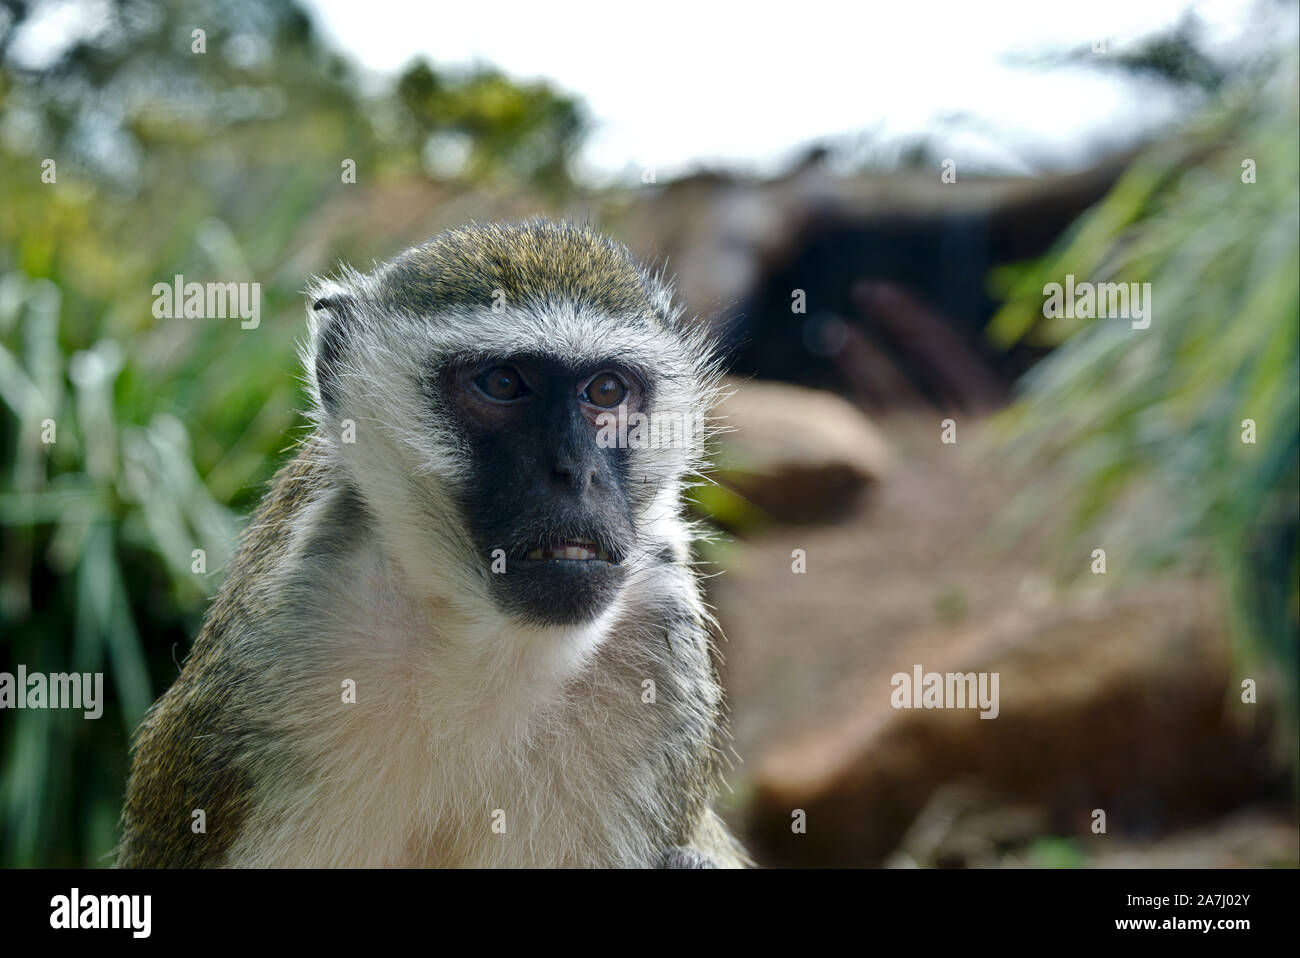 Portrait d'un singe tournée vers la droite de l'appareil photo. Défini sur un arrière-plan. Banque D'Images